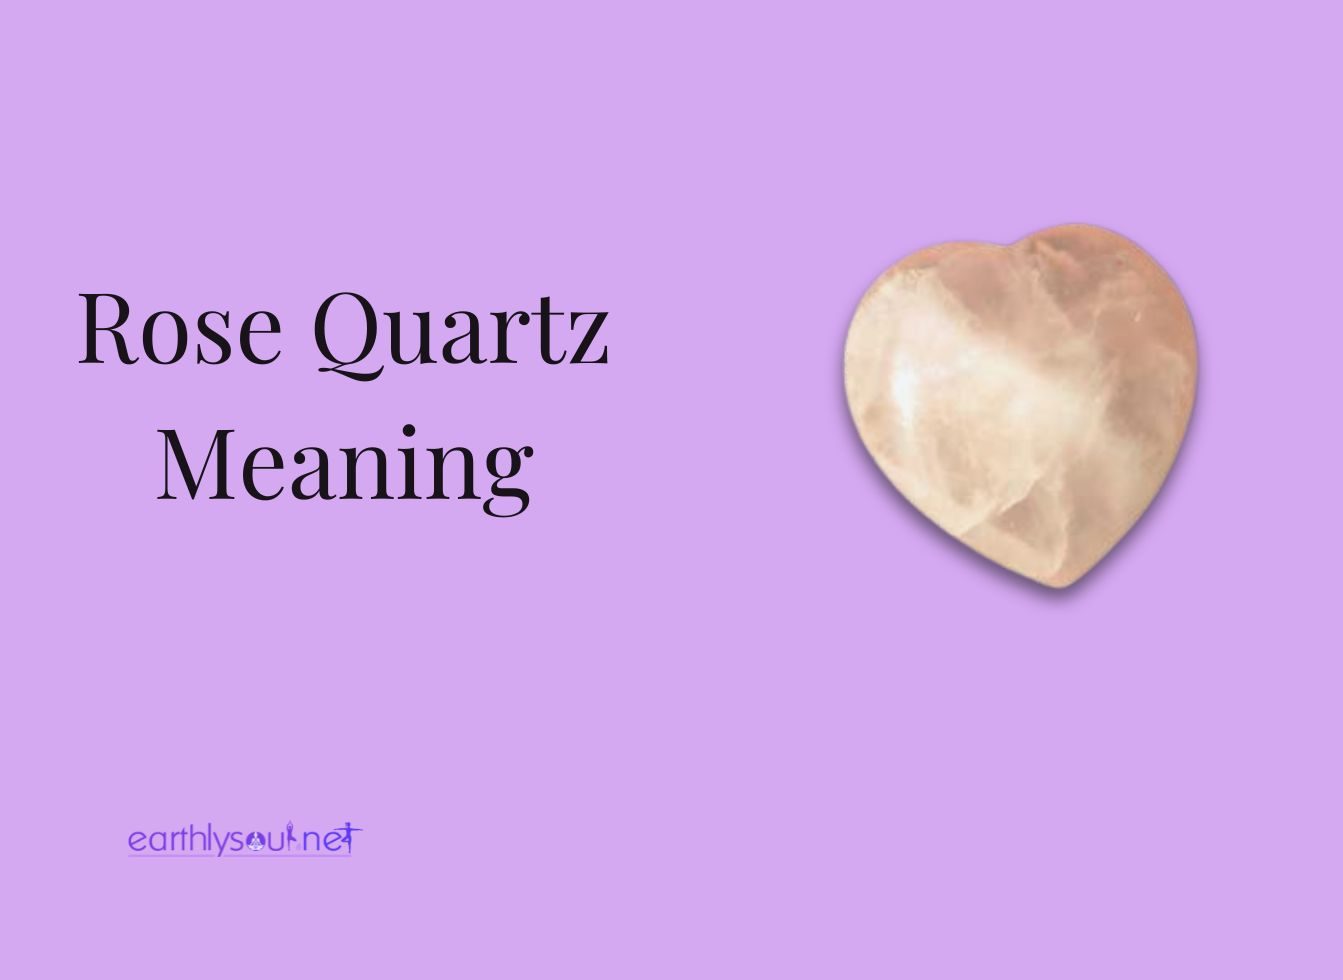 Rose quartz meaning featured image